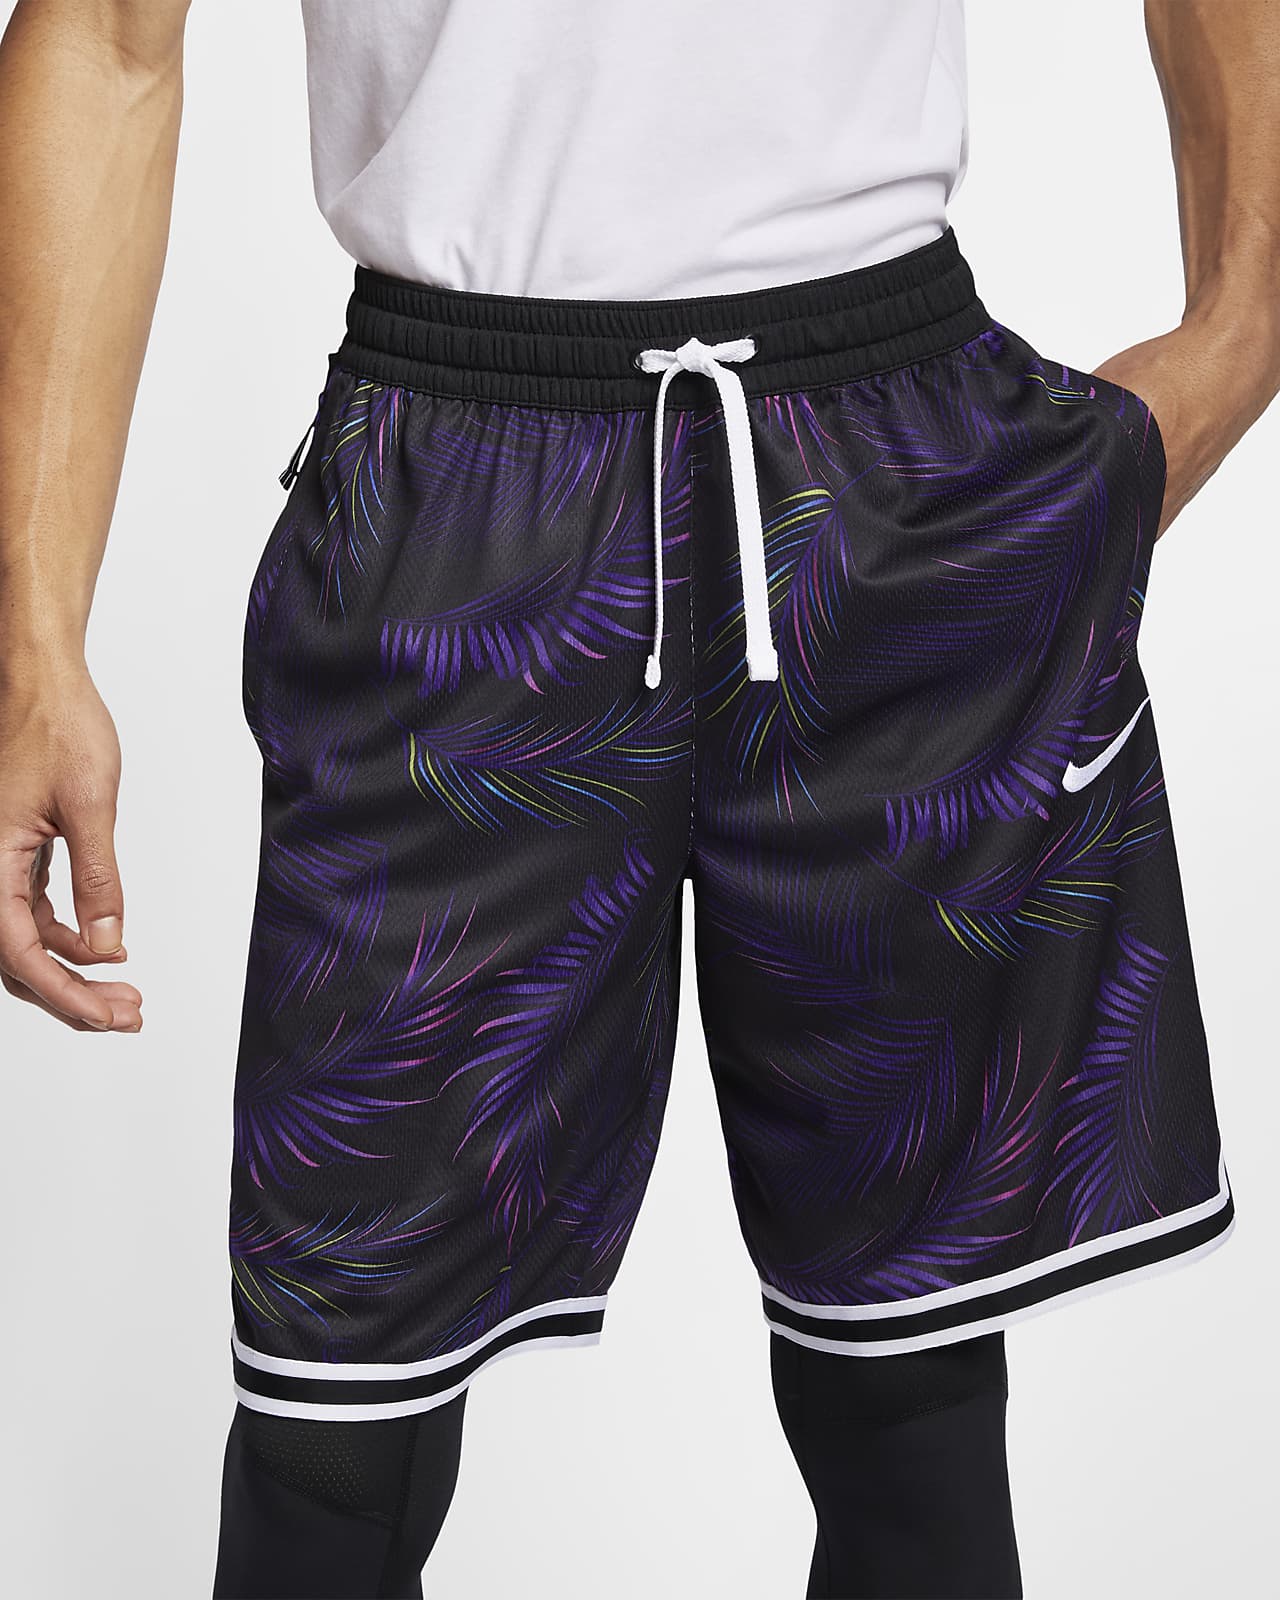 Nike Dri-FIT DNA 男子篮球短裤